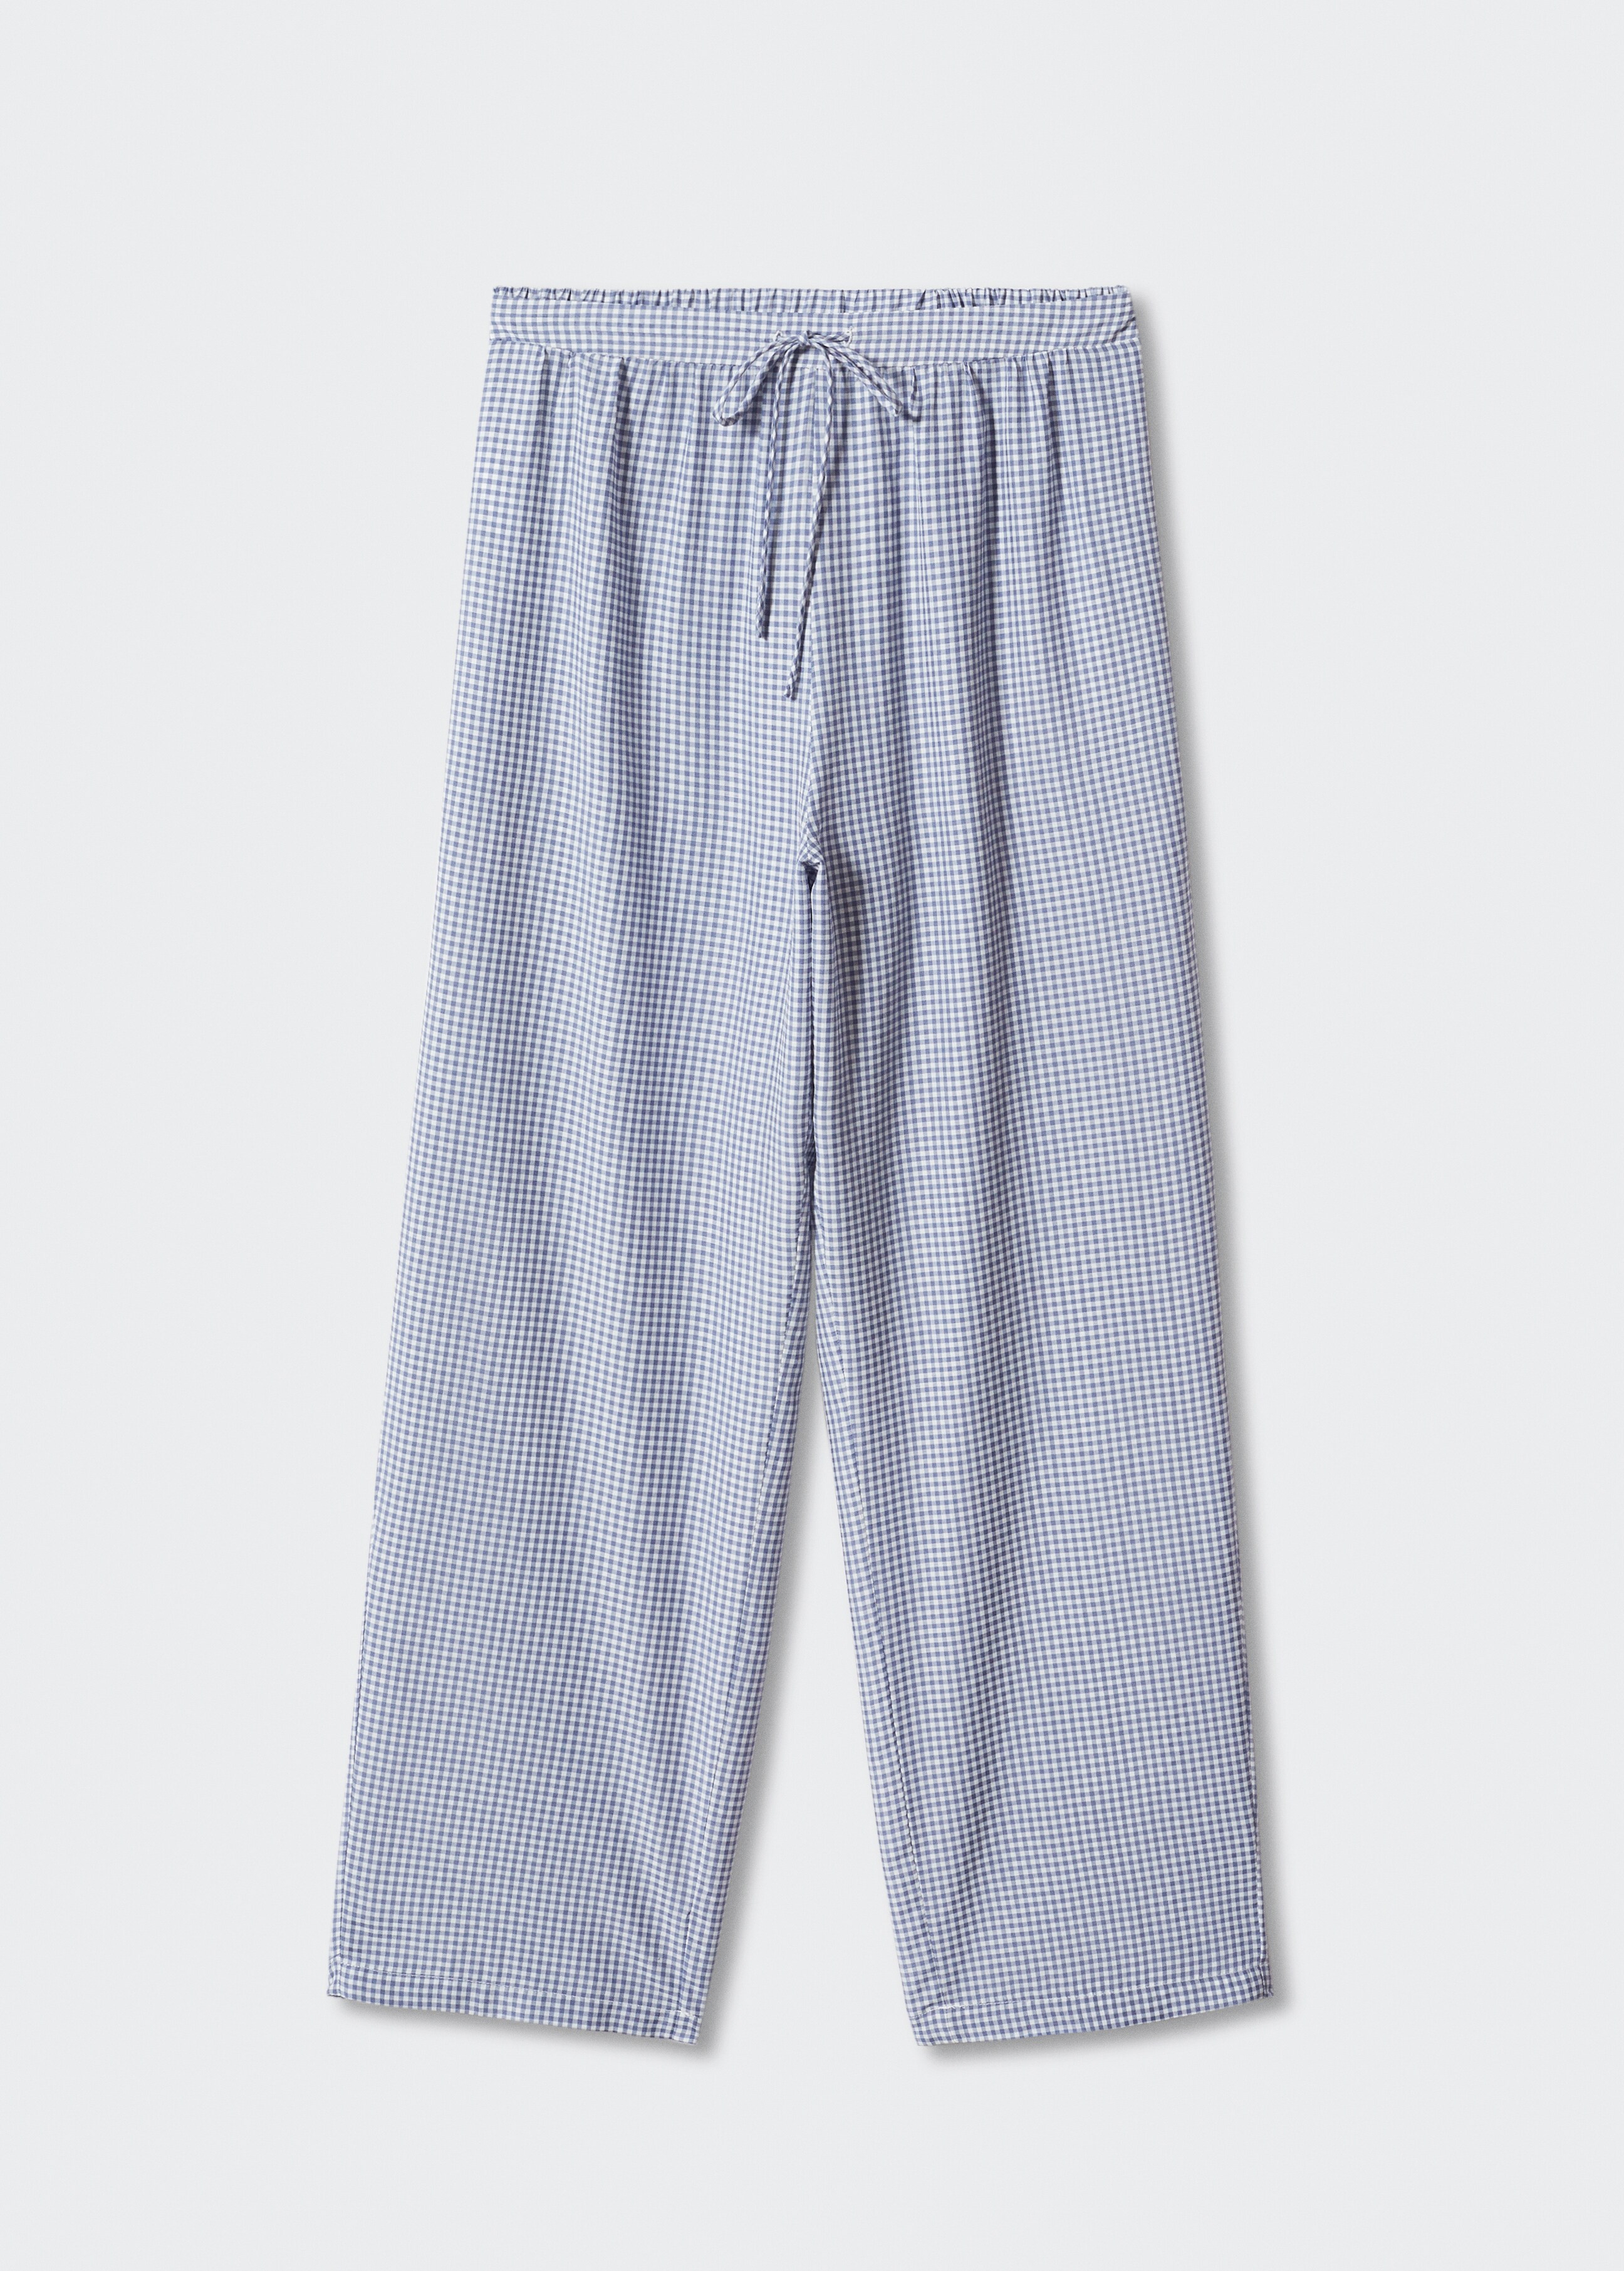 Pantalón pijama vichy - Artículo sin modelo